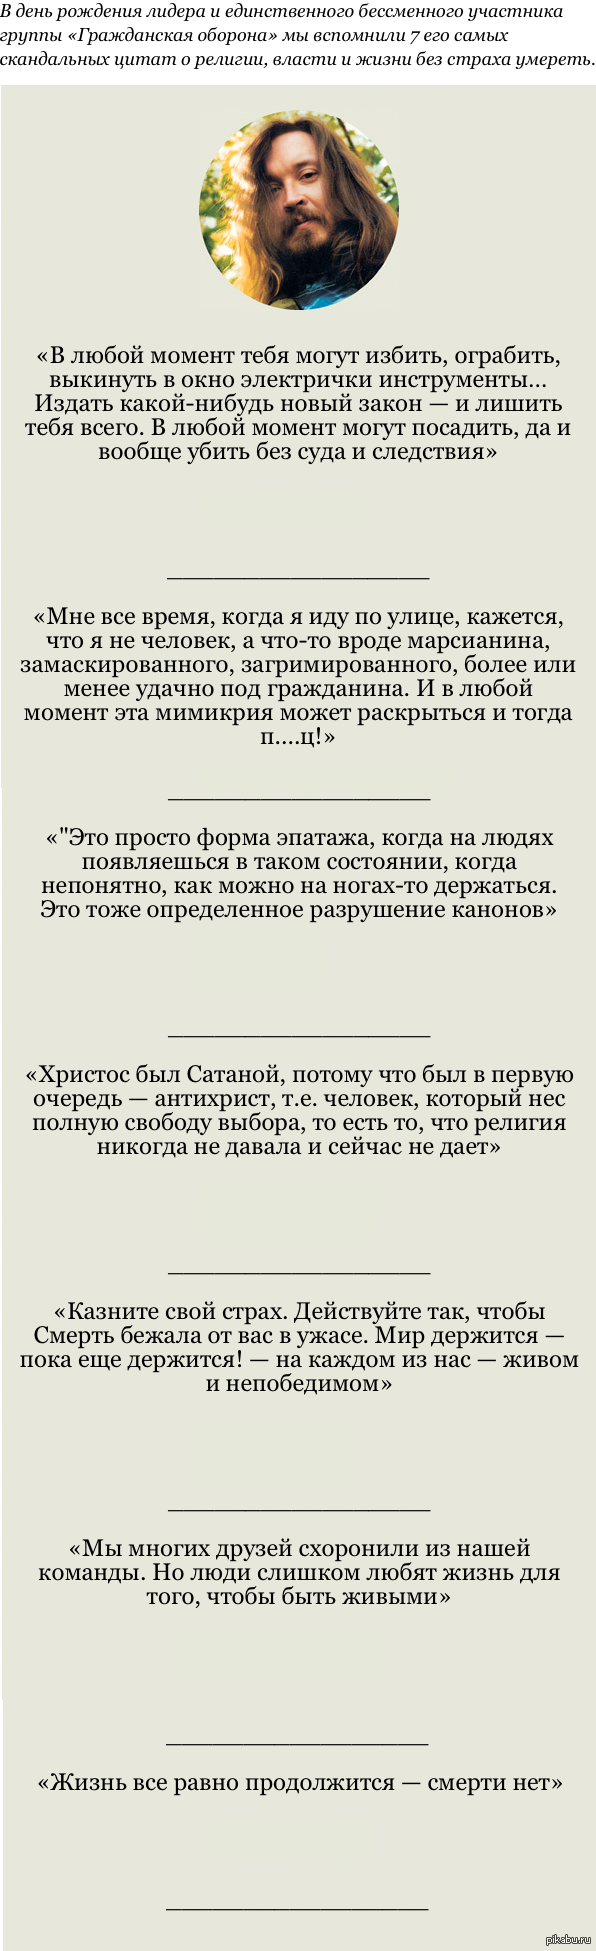 Цитаты из песен Егора Летова и Янки Дягилевой